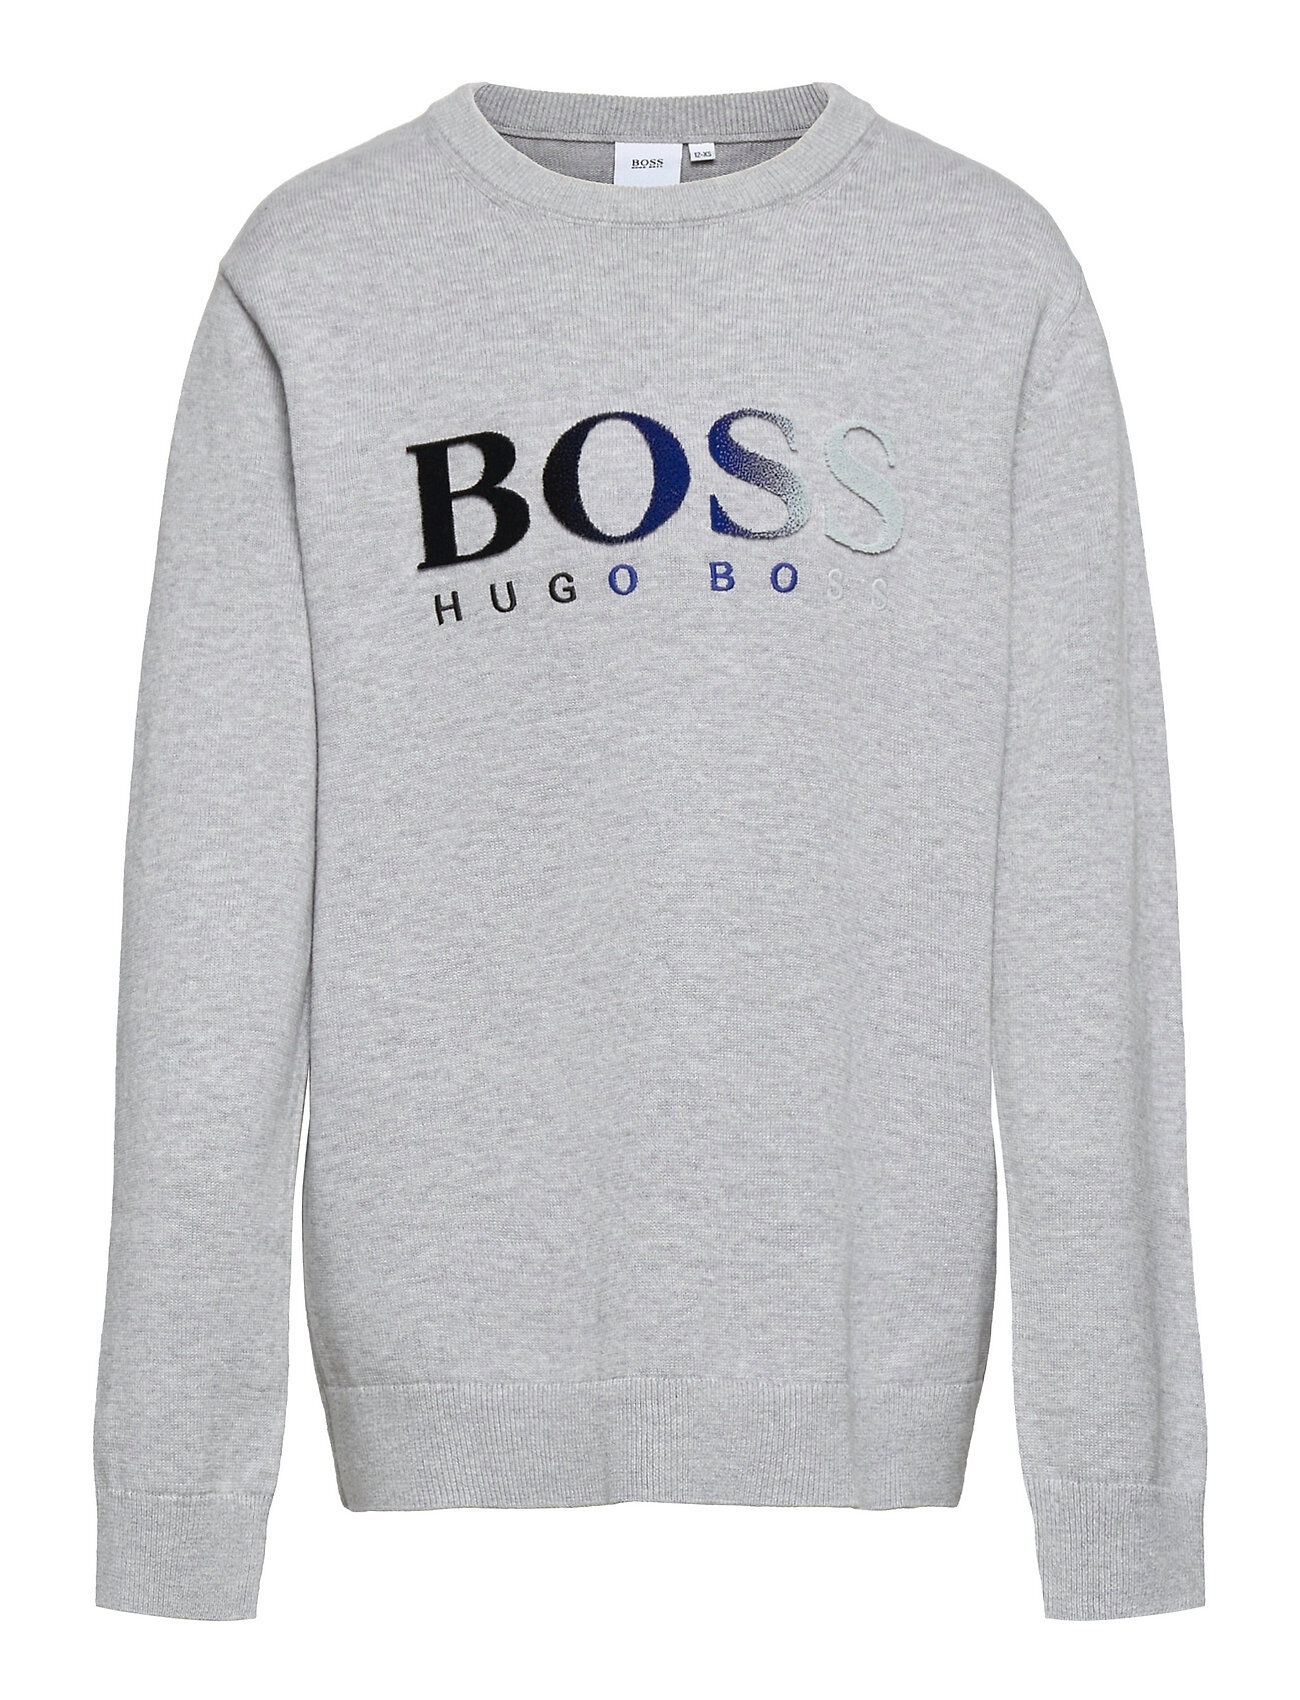 Boss Pullover Sweat-shirt Genser Grå BOSS